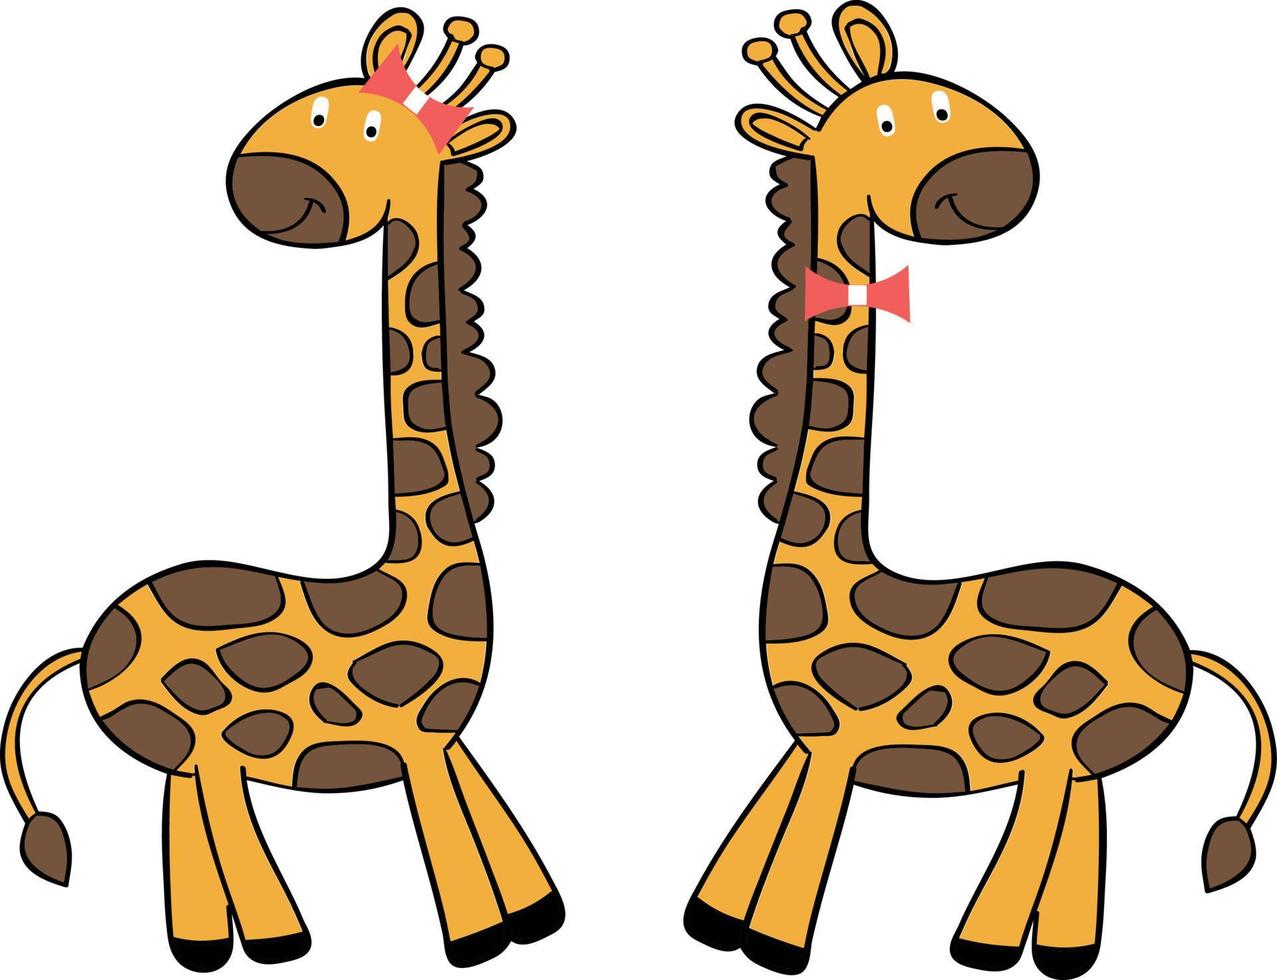 Giraffe Tier Afrika Gelb im braun Flecken Illustration. vektor